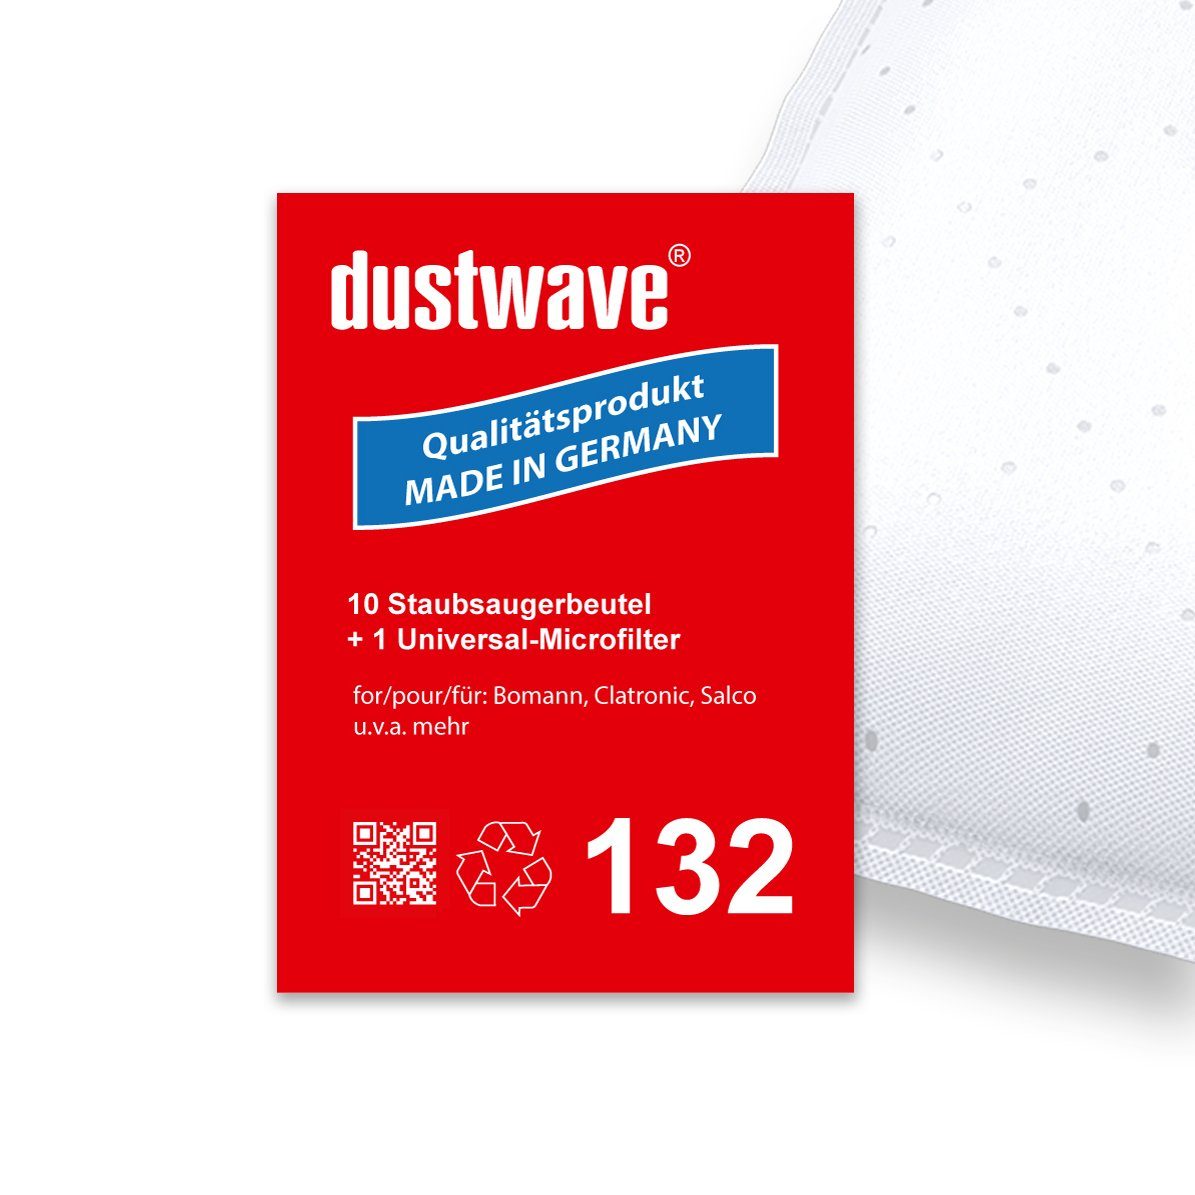 zuschneidbar) passend für 10 80210005, Hepa-Filter Dustwave (ca. Staubsaugerbeutel Circon Sparpack, 10 St., 1 15x15cm + Staubsaugerbeutel Sparpack, -